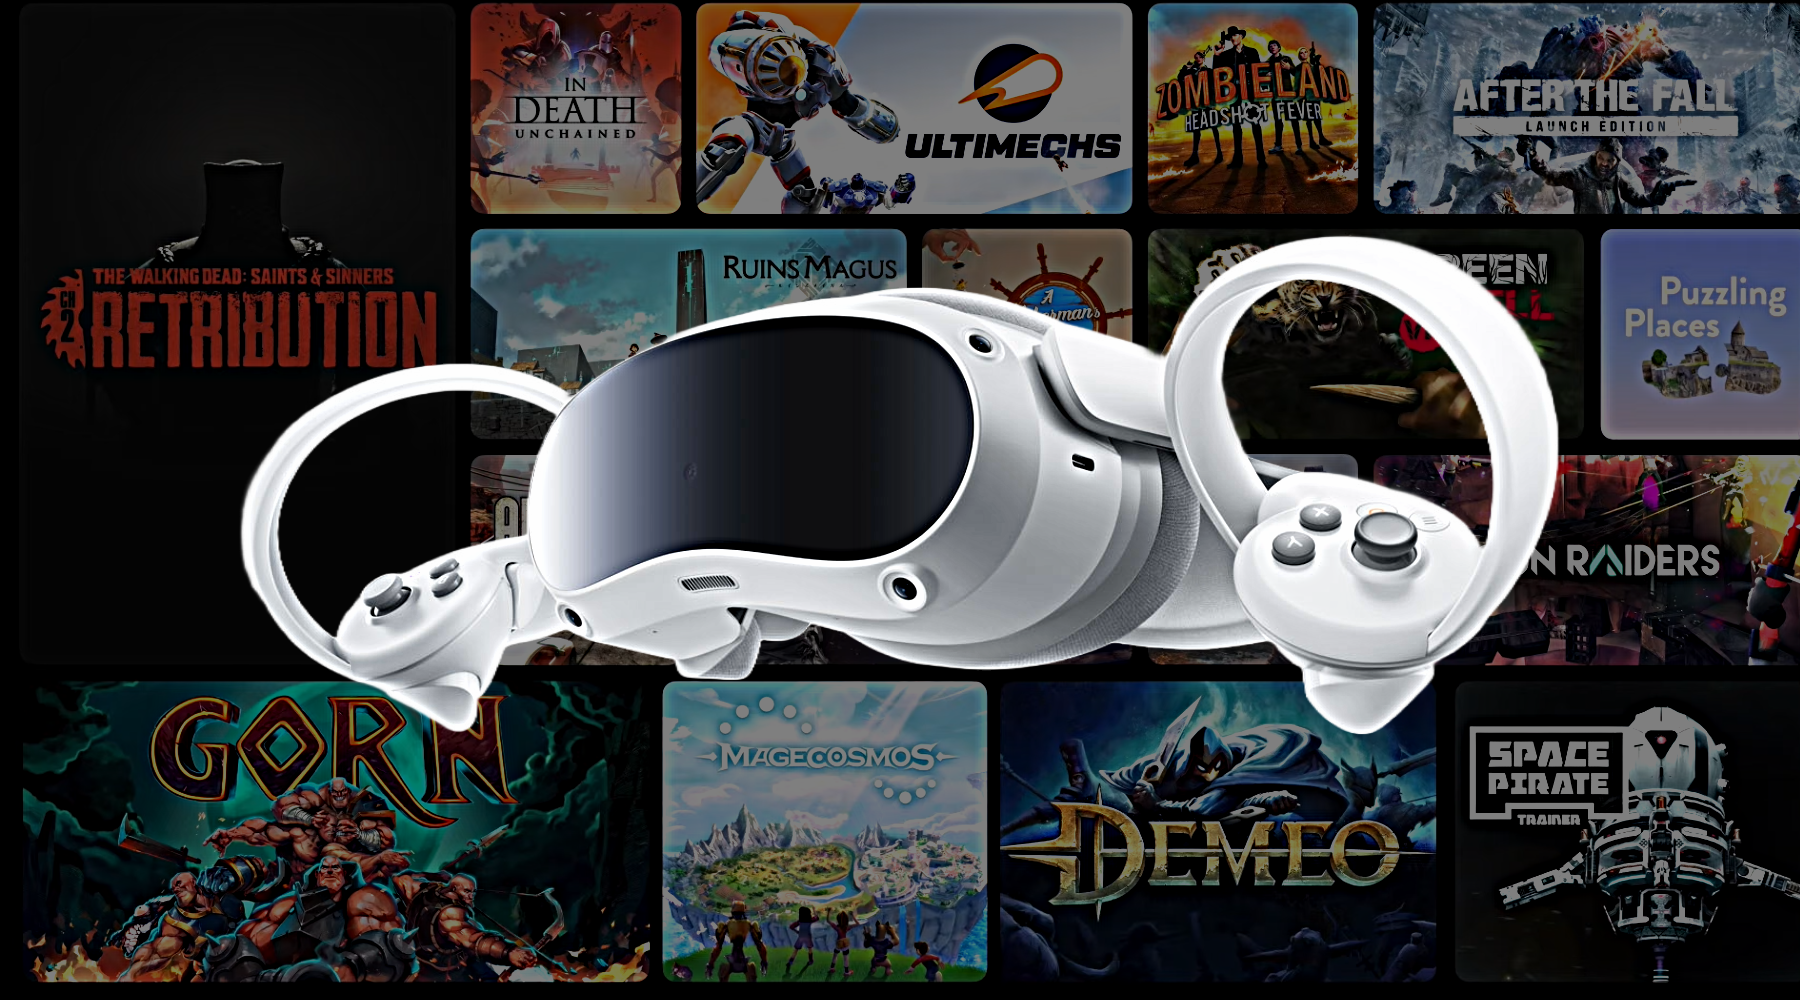 4 Award-Winning VR Games By Vertigo Games Come To The New Pico 4 VR Headset